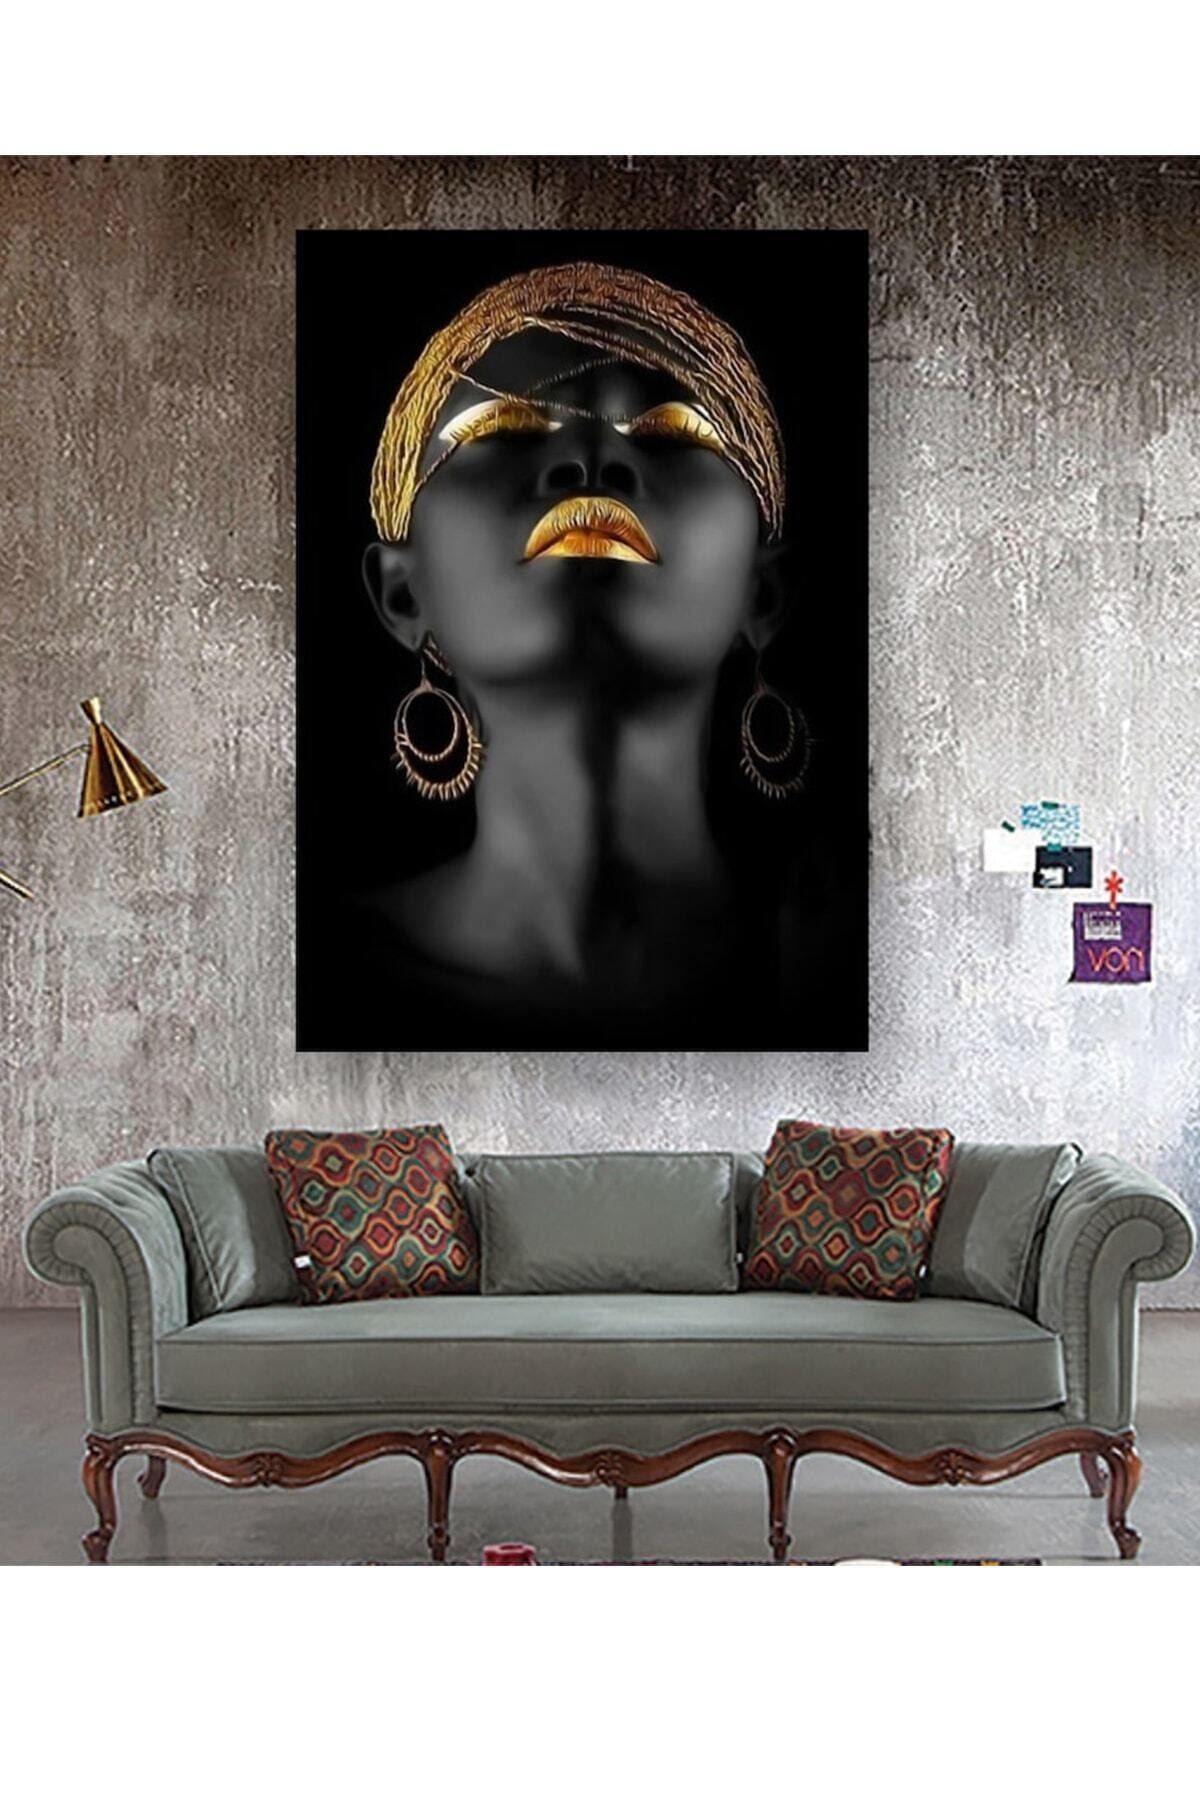 Haki Alışveriş Dünyası Kanvas Tablo Afrikalı Kadın Tablosu 60x45 Cm Dekoratif Moda Dekorasyon Tablo